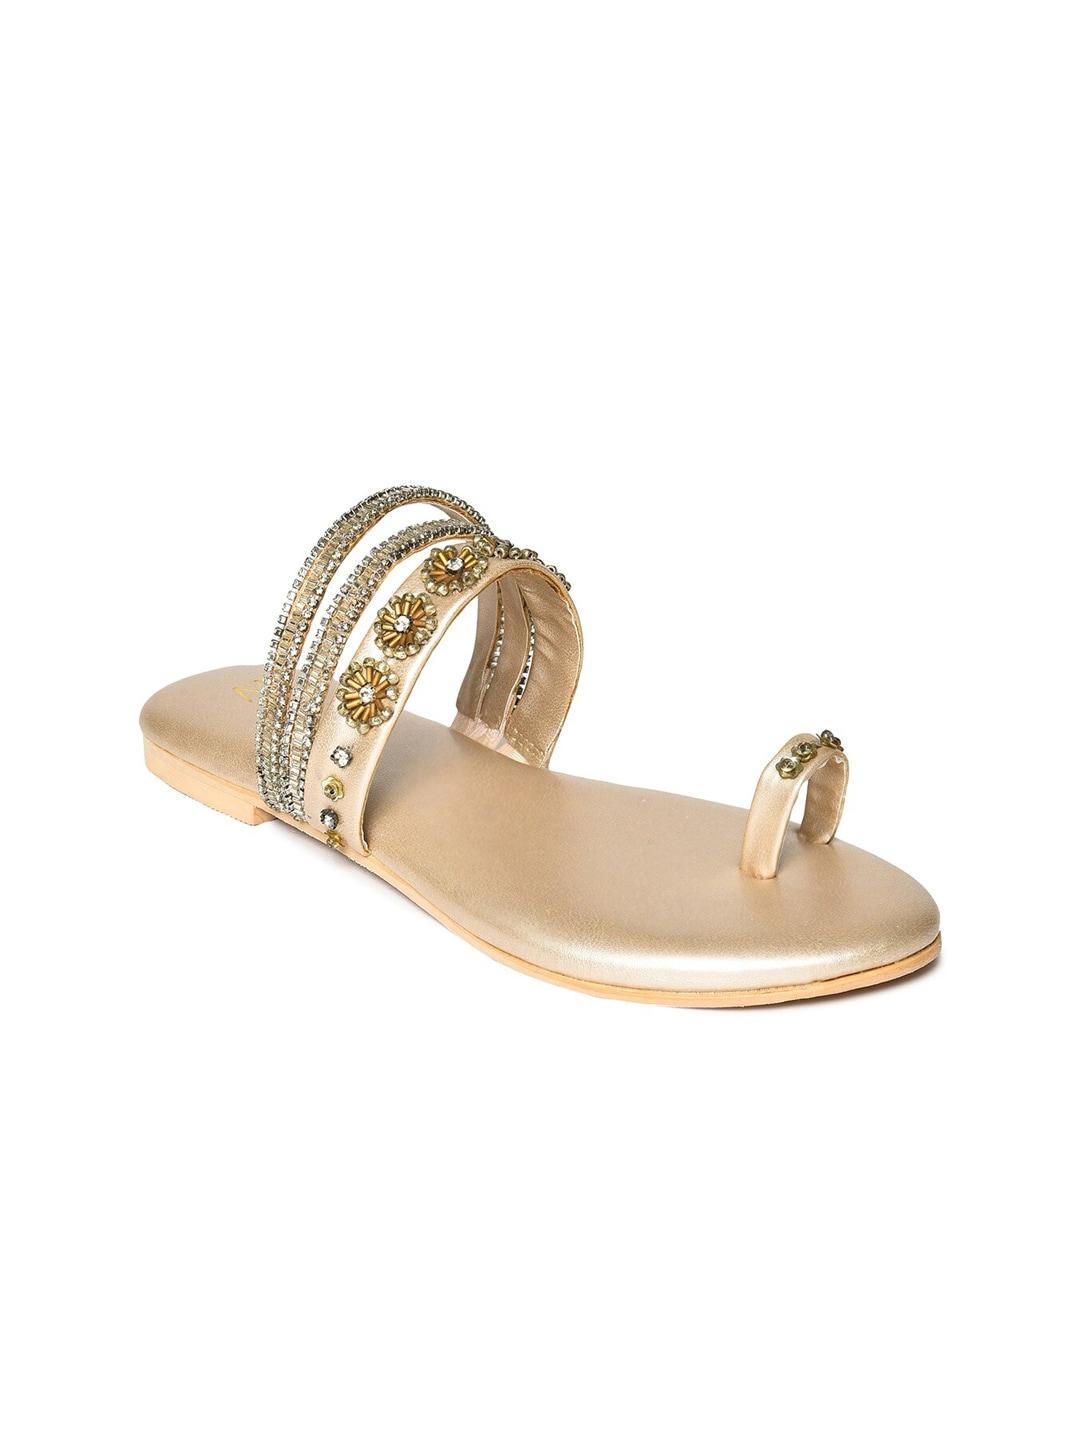 W Women Gold-Toned One Toe Flats